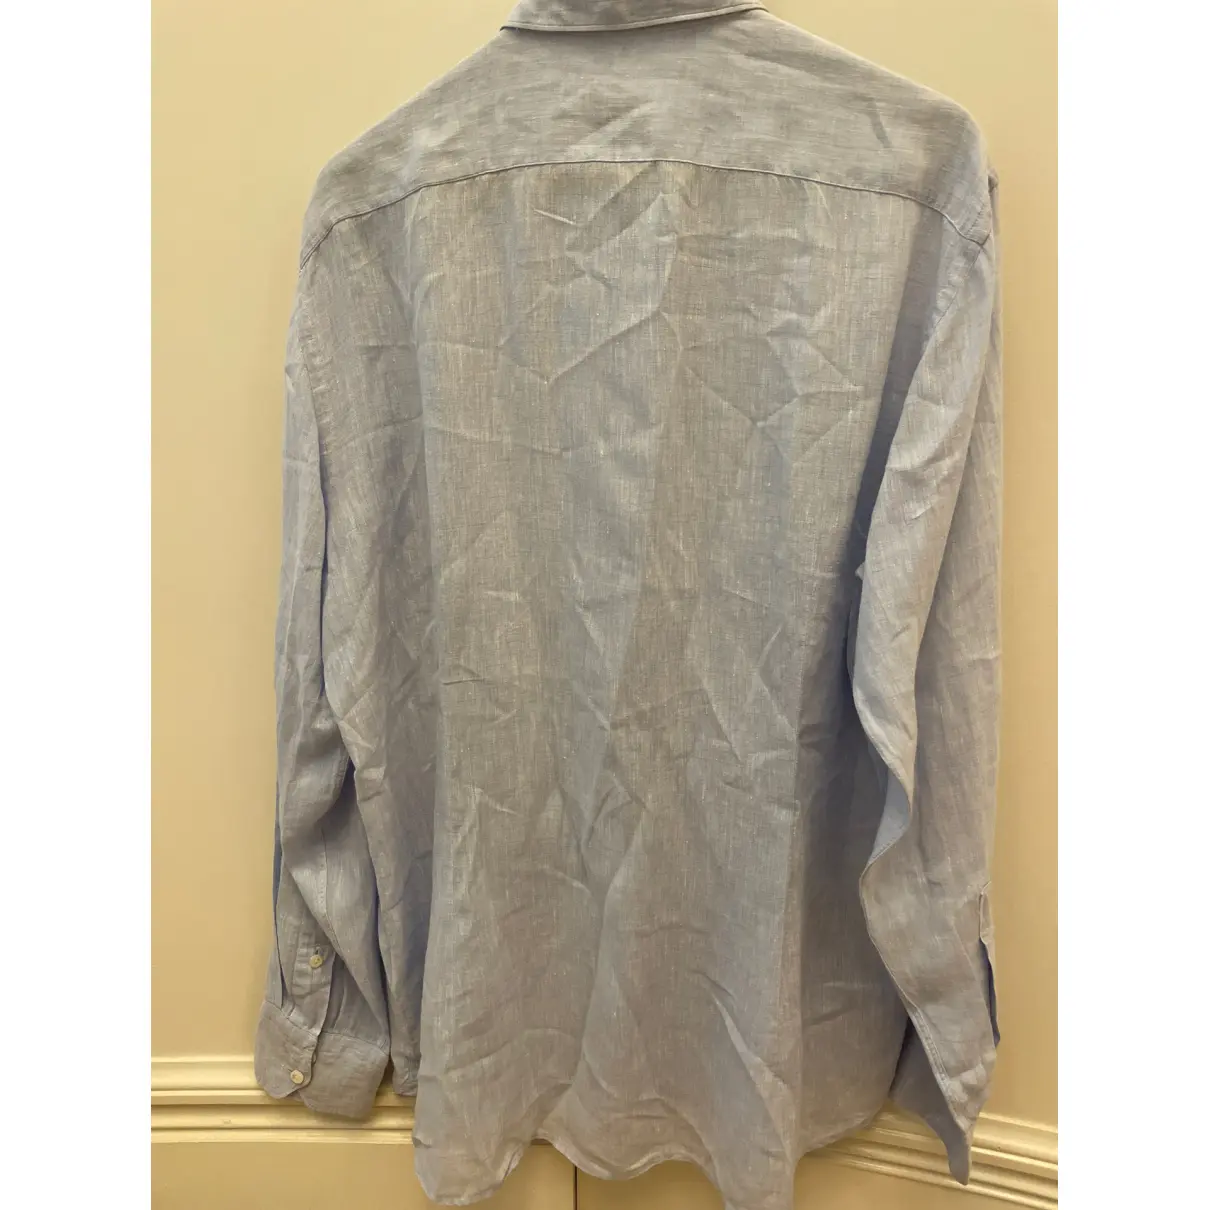 Buy VAN LAACK Linen shirt online